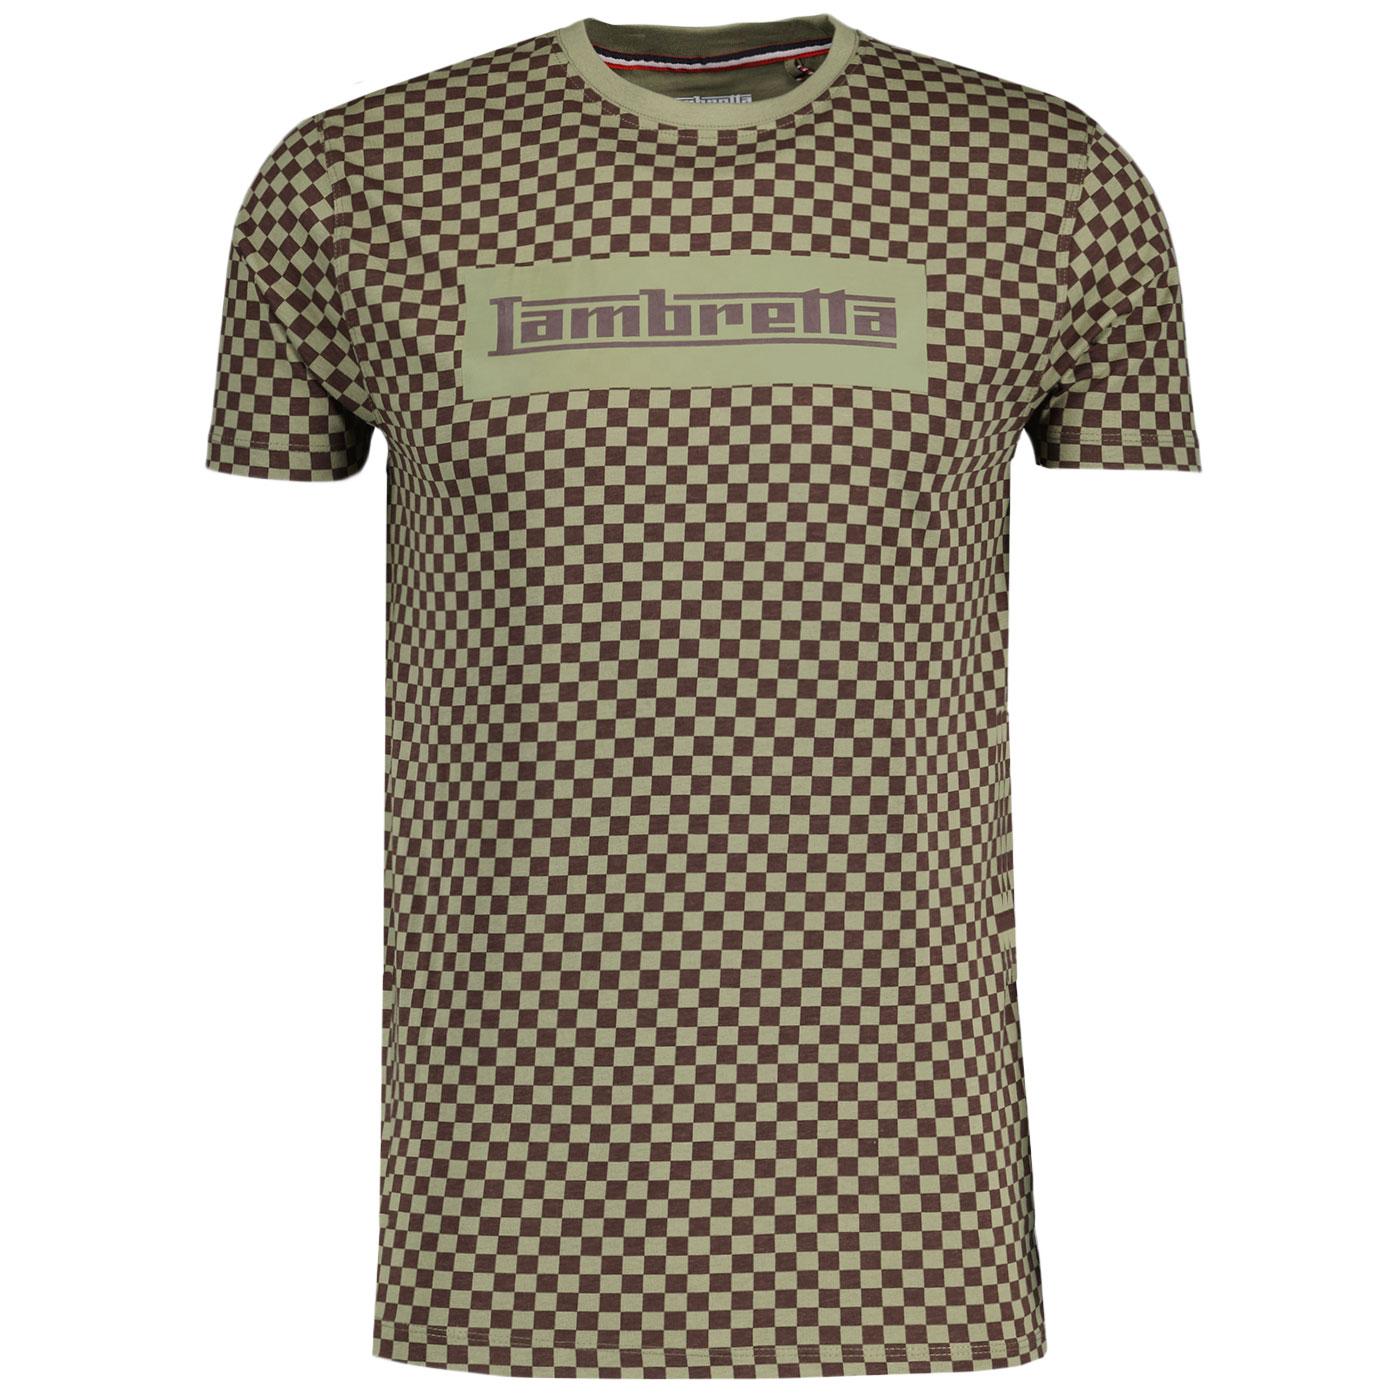 Lambretta Two Tone Retro Chequerboard T-shirt LG/J